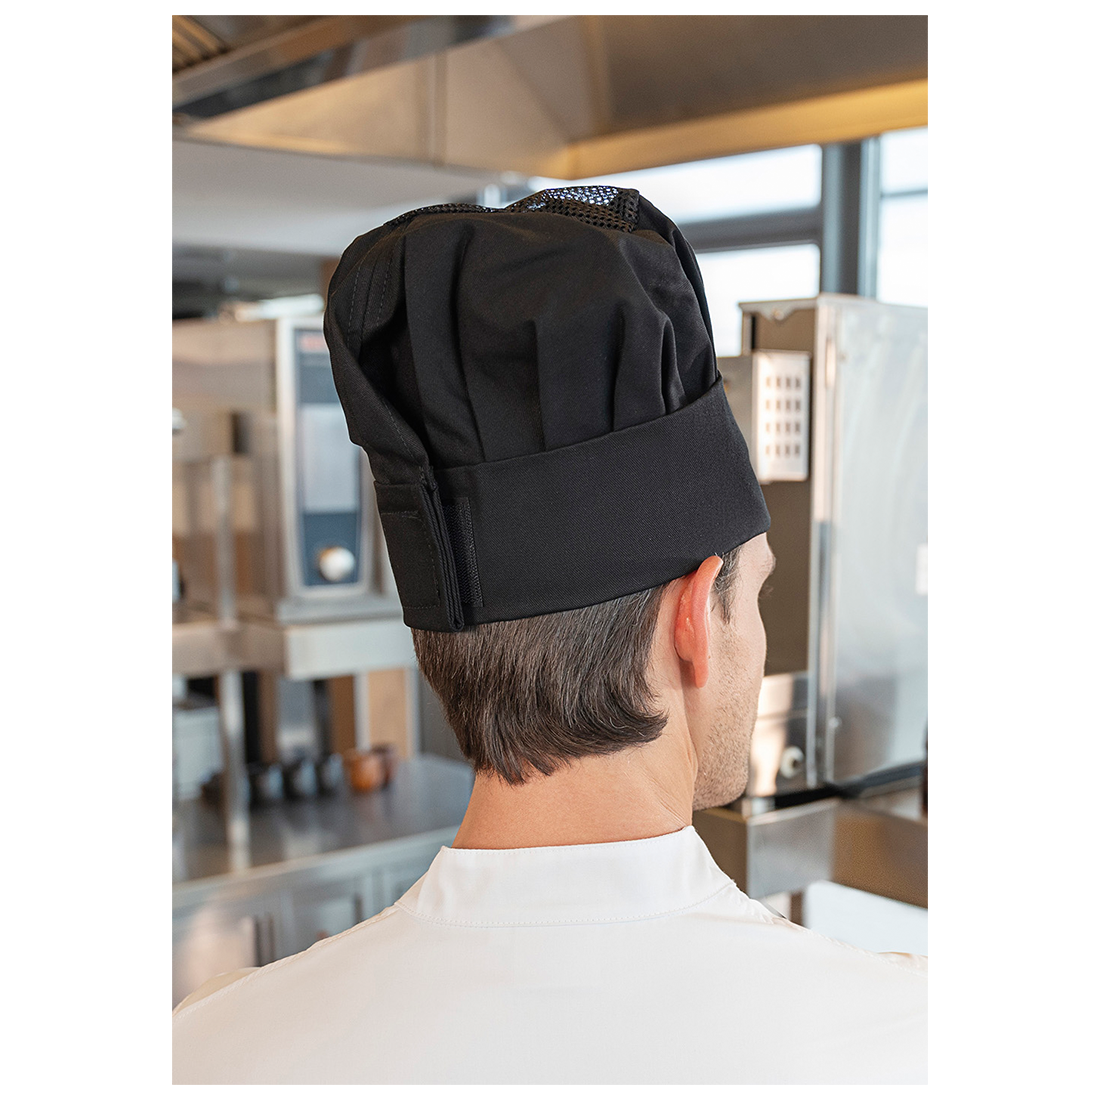 Chef's Hat Jean - Safetywear